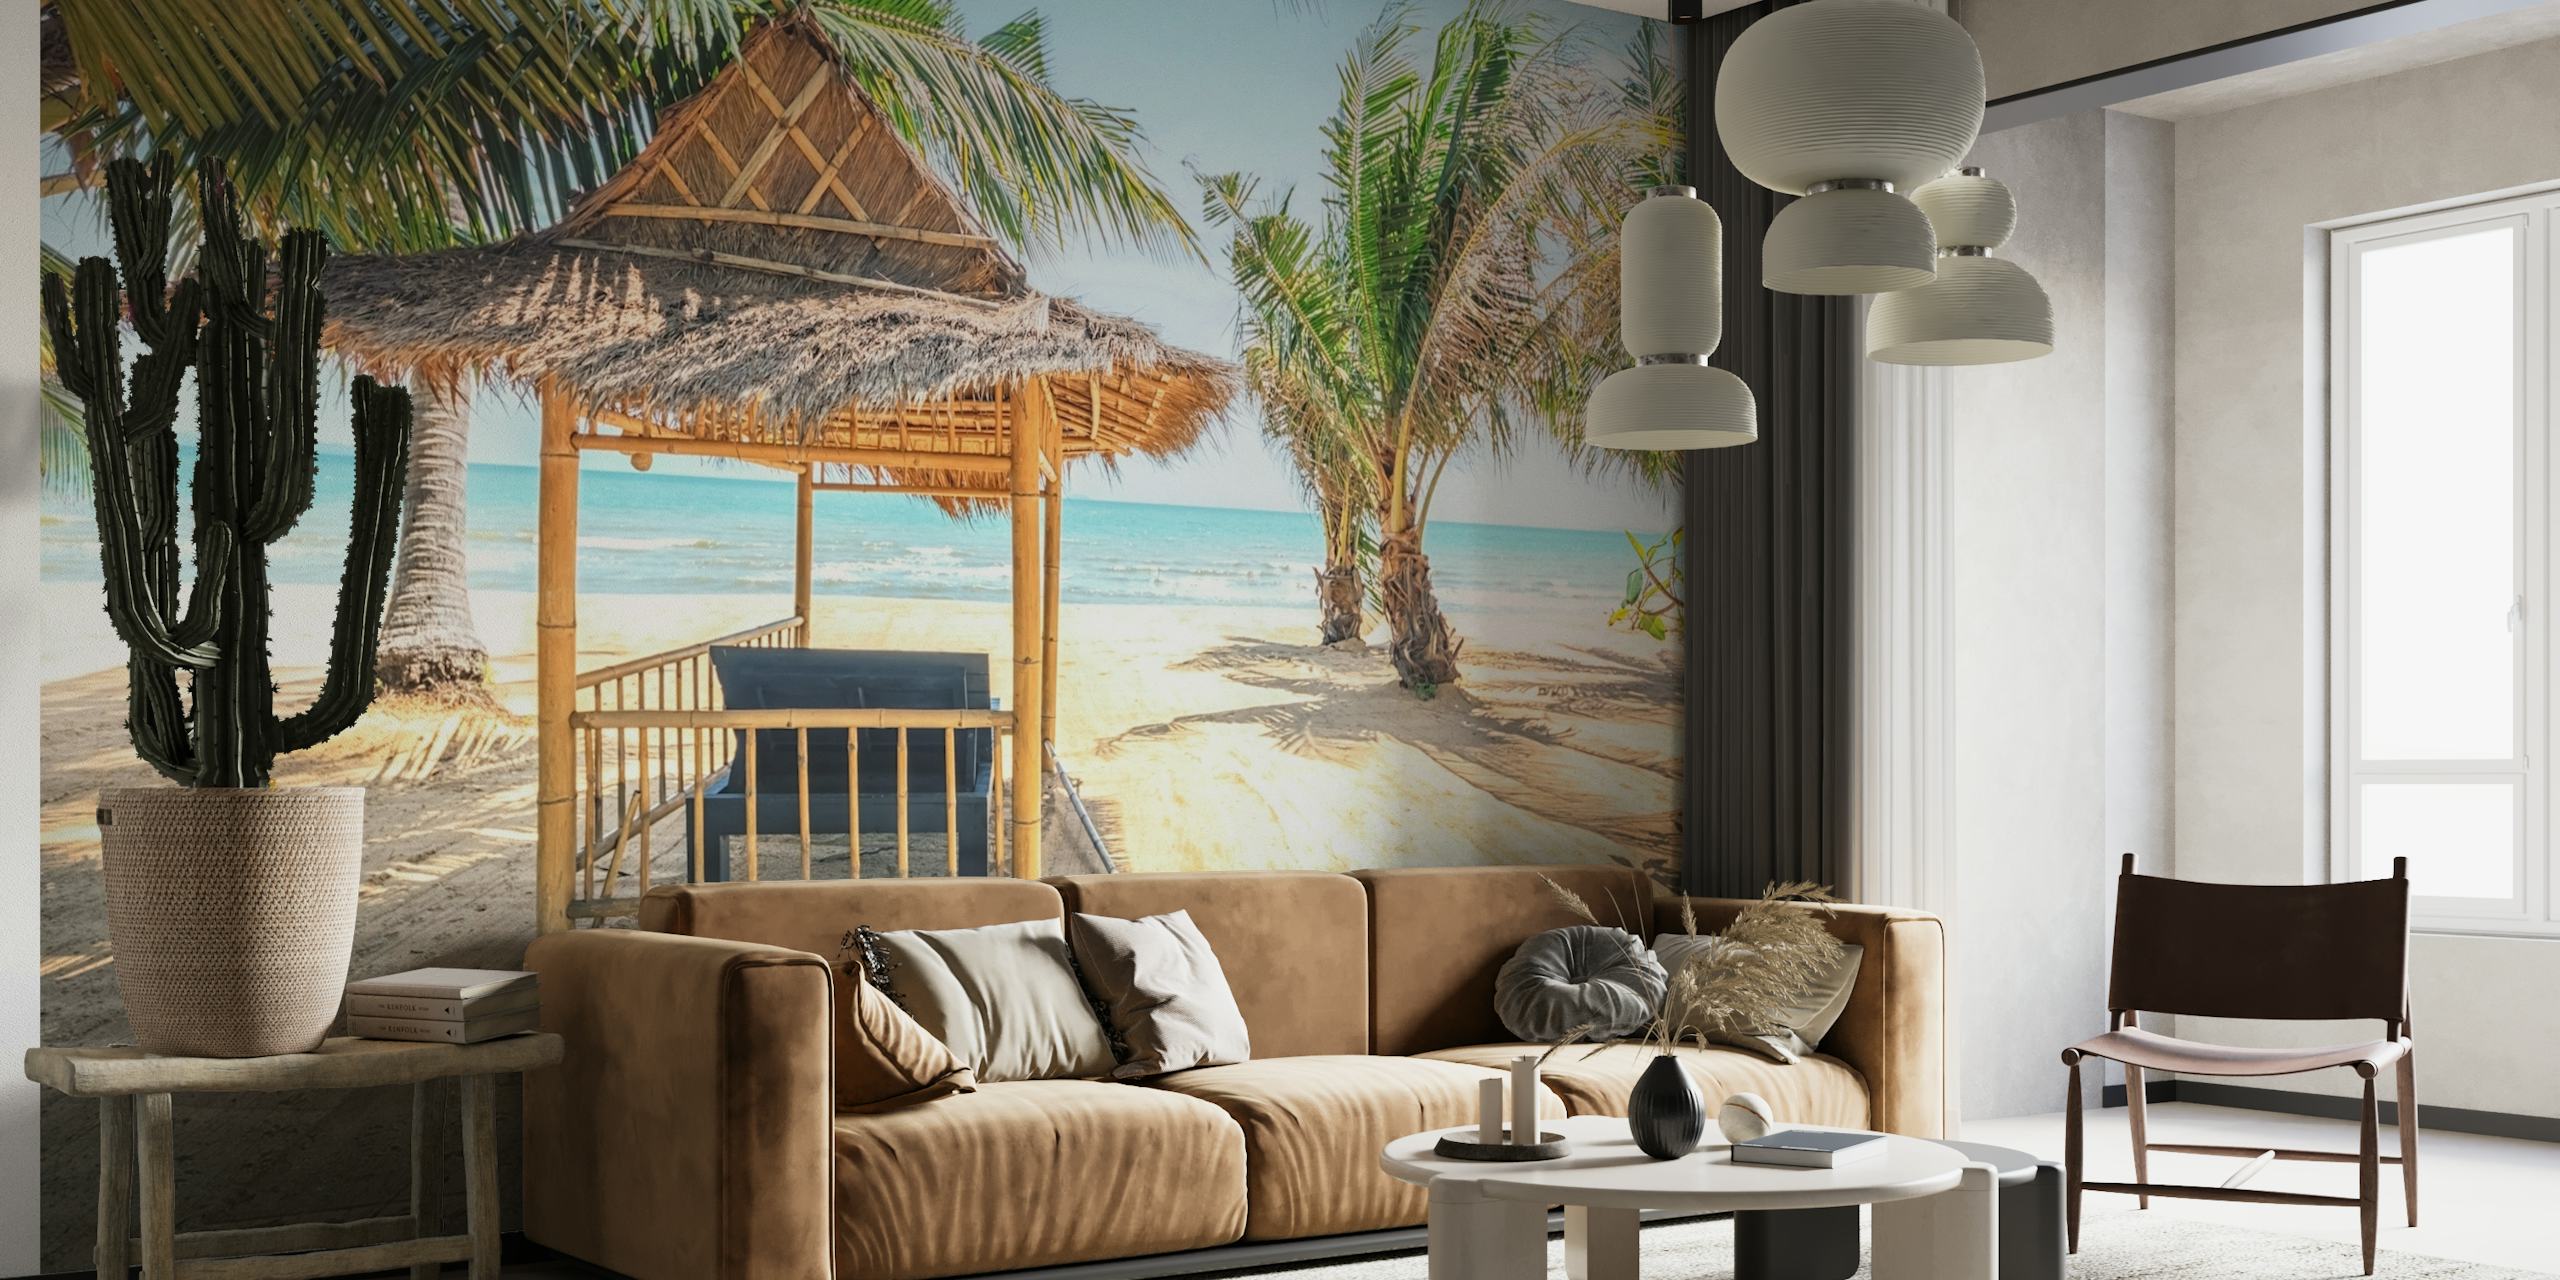 Slamnata koliba na pješčanoj plaži s palmama i zidnim slikama s pogledom na ocean